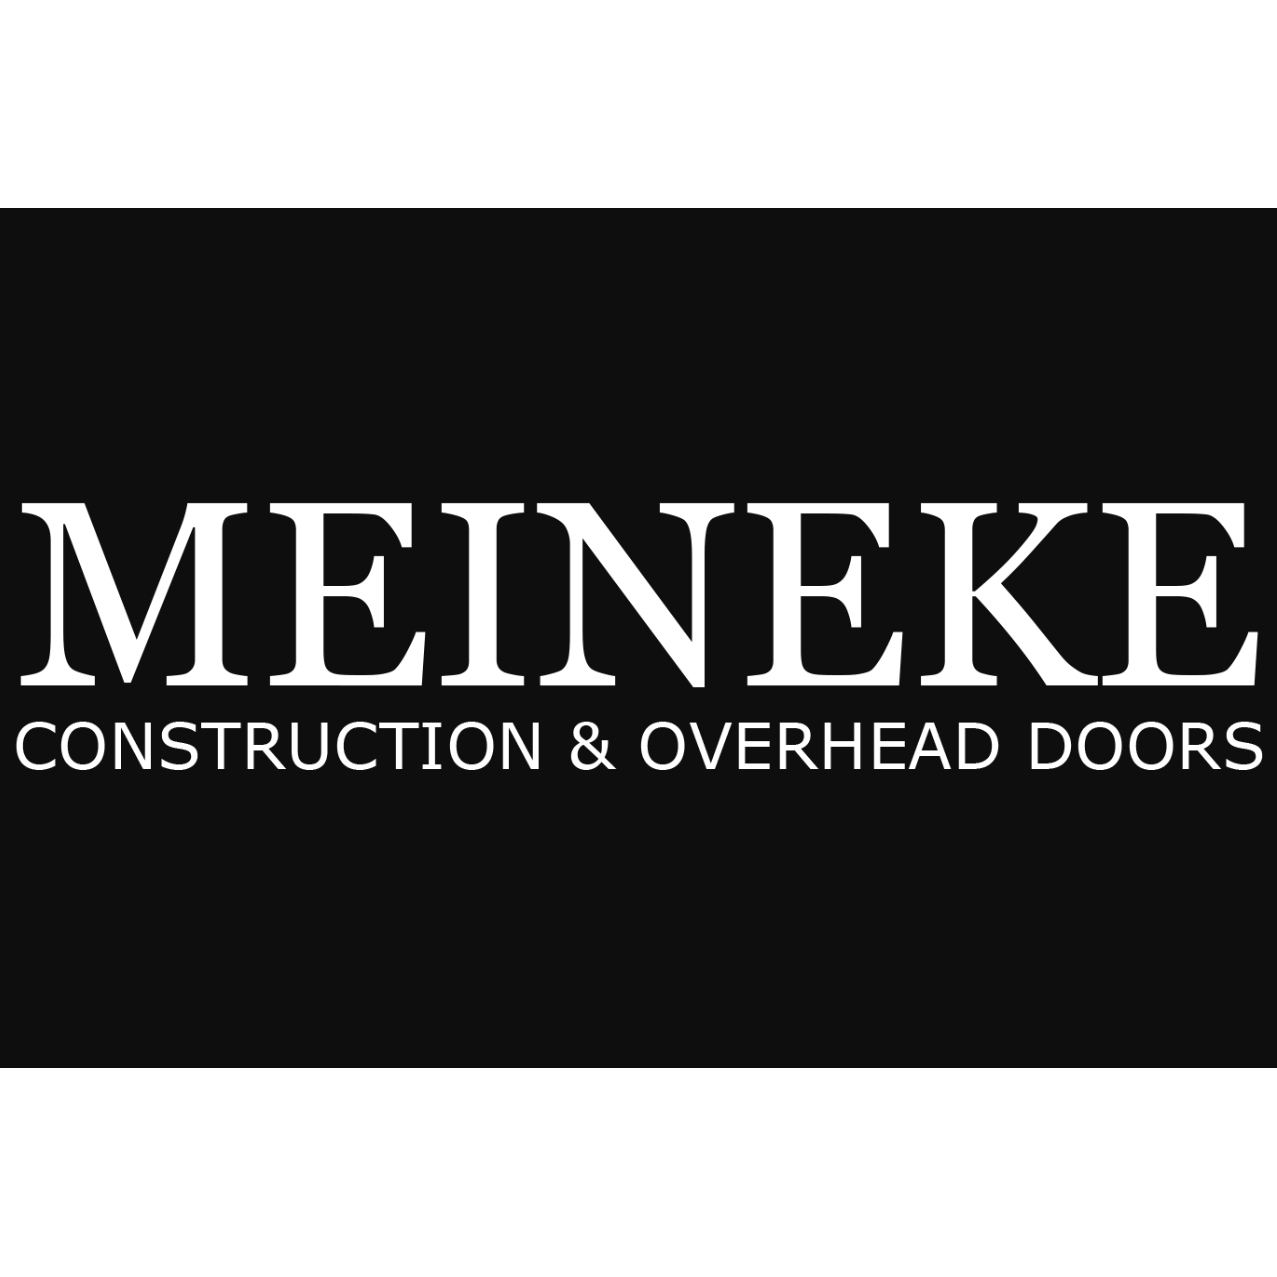 Meineke Construction & Overhead Doors